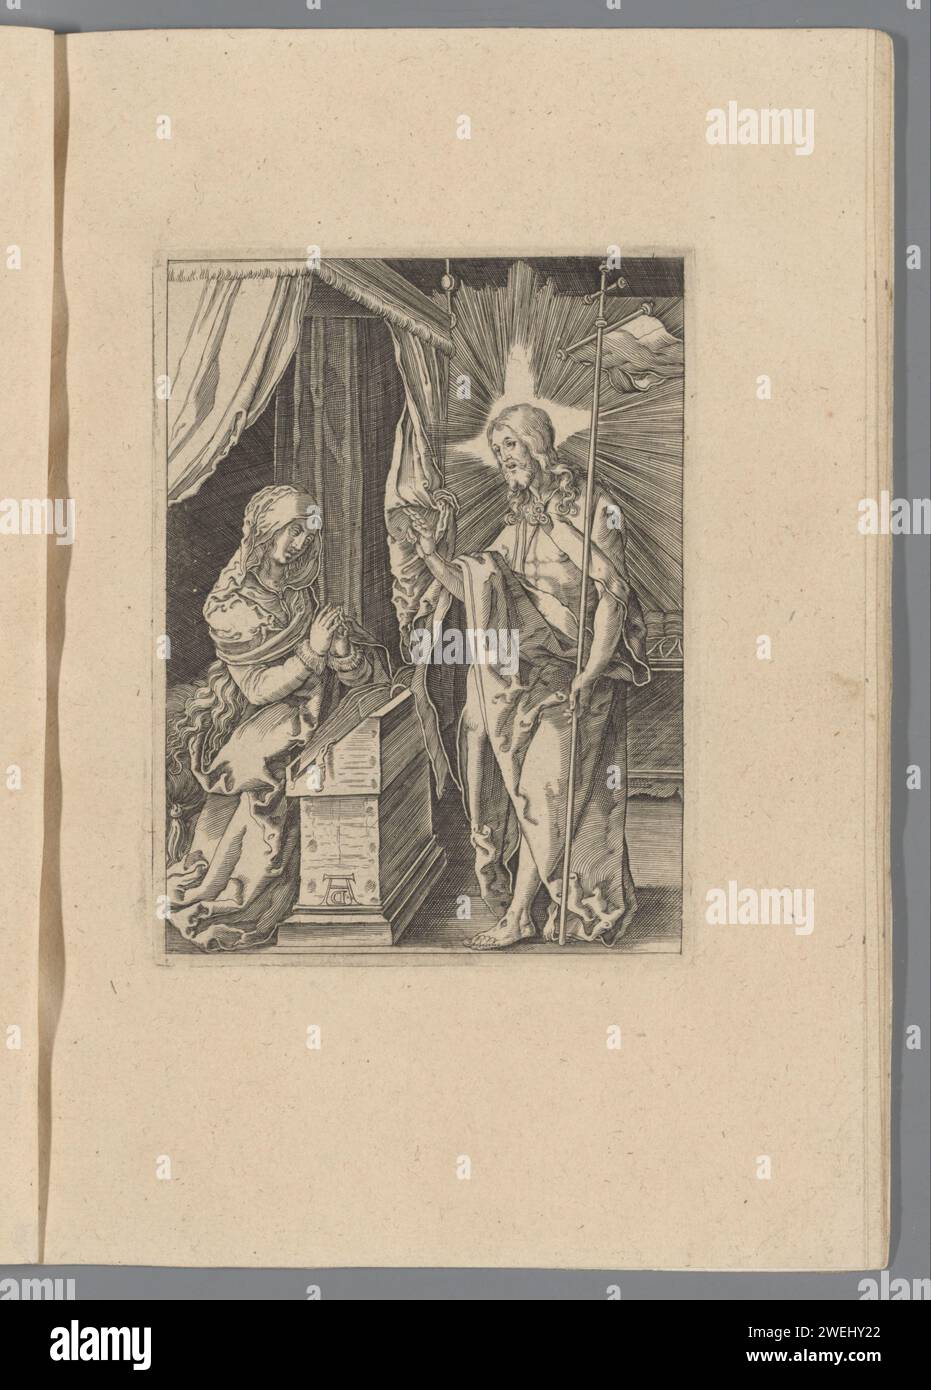 Christus erscheint seiner Mutter, 1610–1620 Druck der aufsteigende Christus grüßt seine Mutter Maria, die für einen Leser kniet. Drucken ist Teil eines Albums. Papiergravur Christus, vielleicht als Pilger gekleidet, erscheint seiner Mutter, die normalerweise betend gezeigt wird Stockfoto